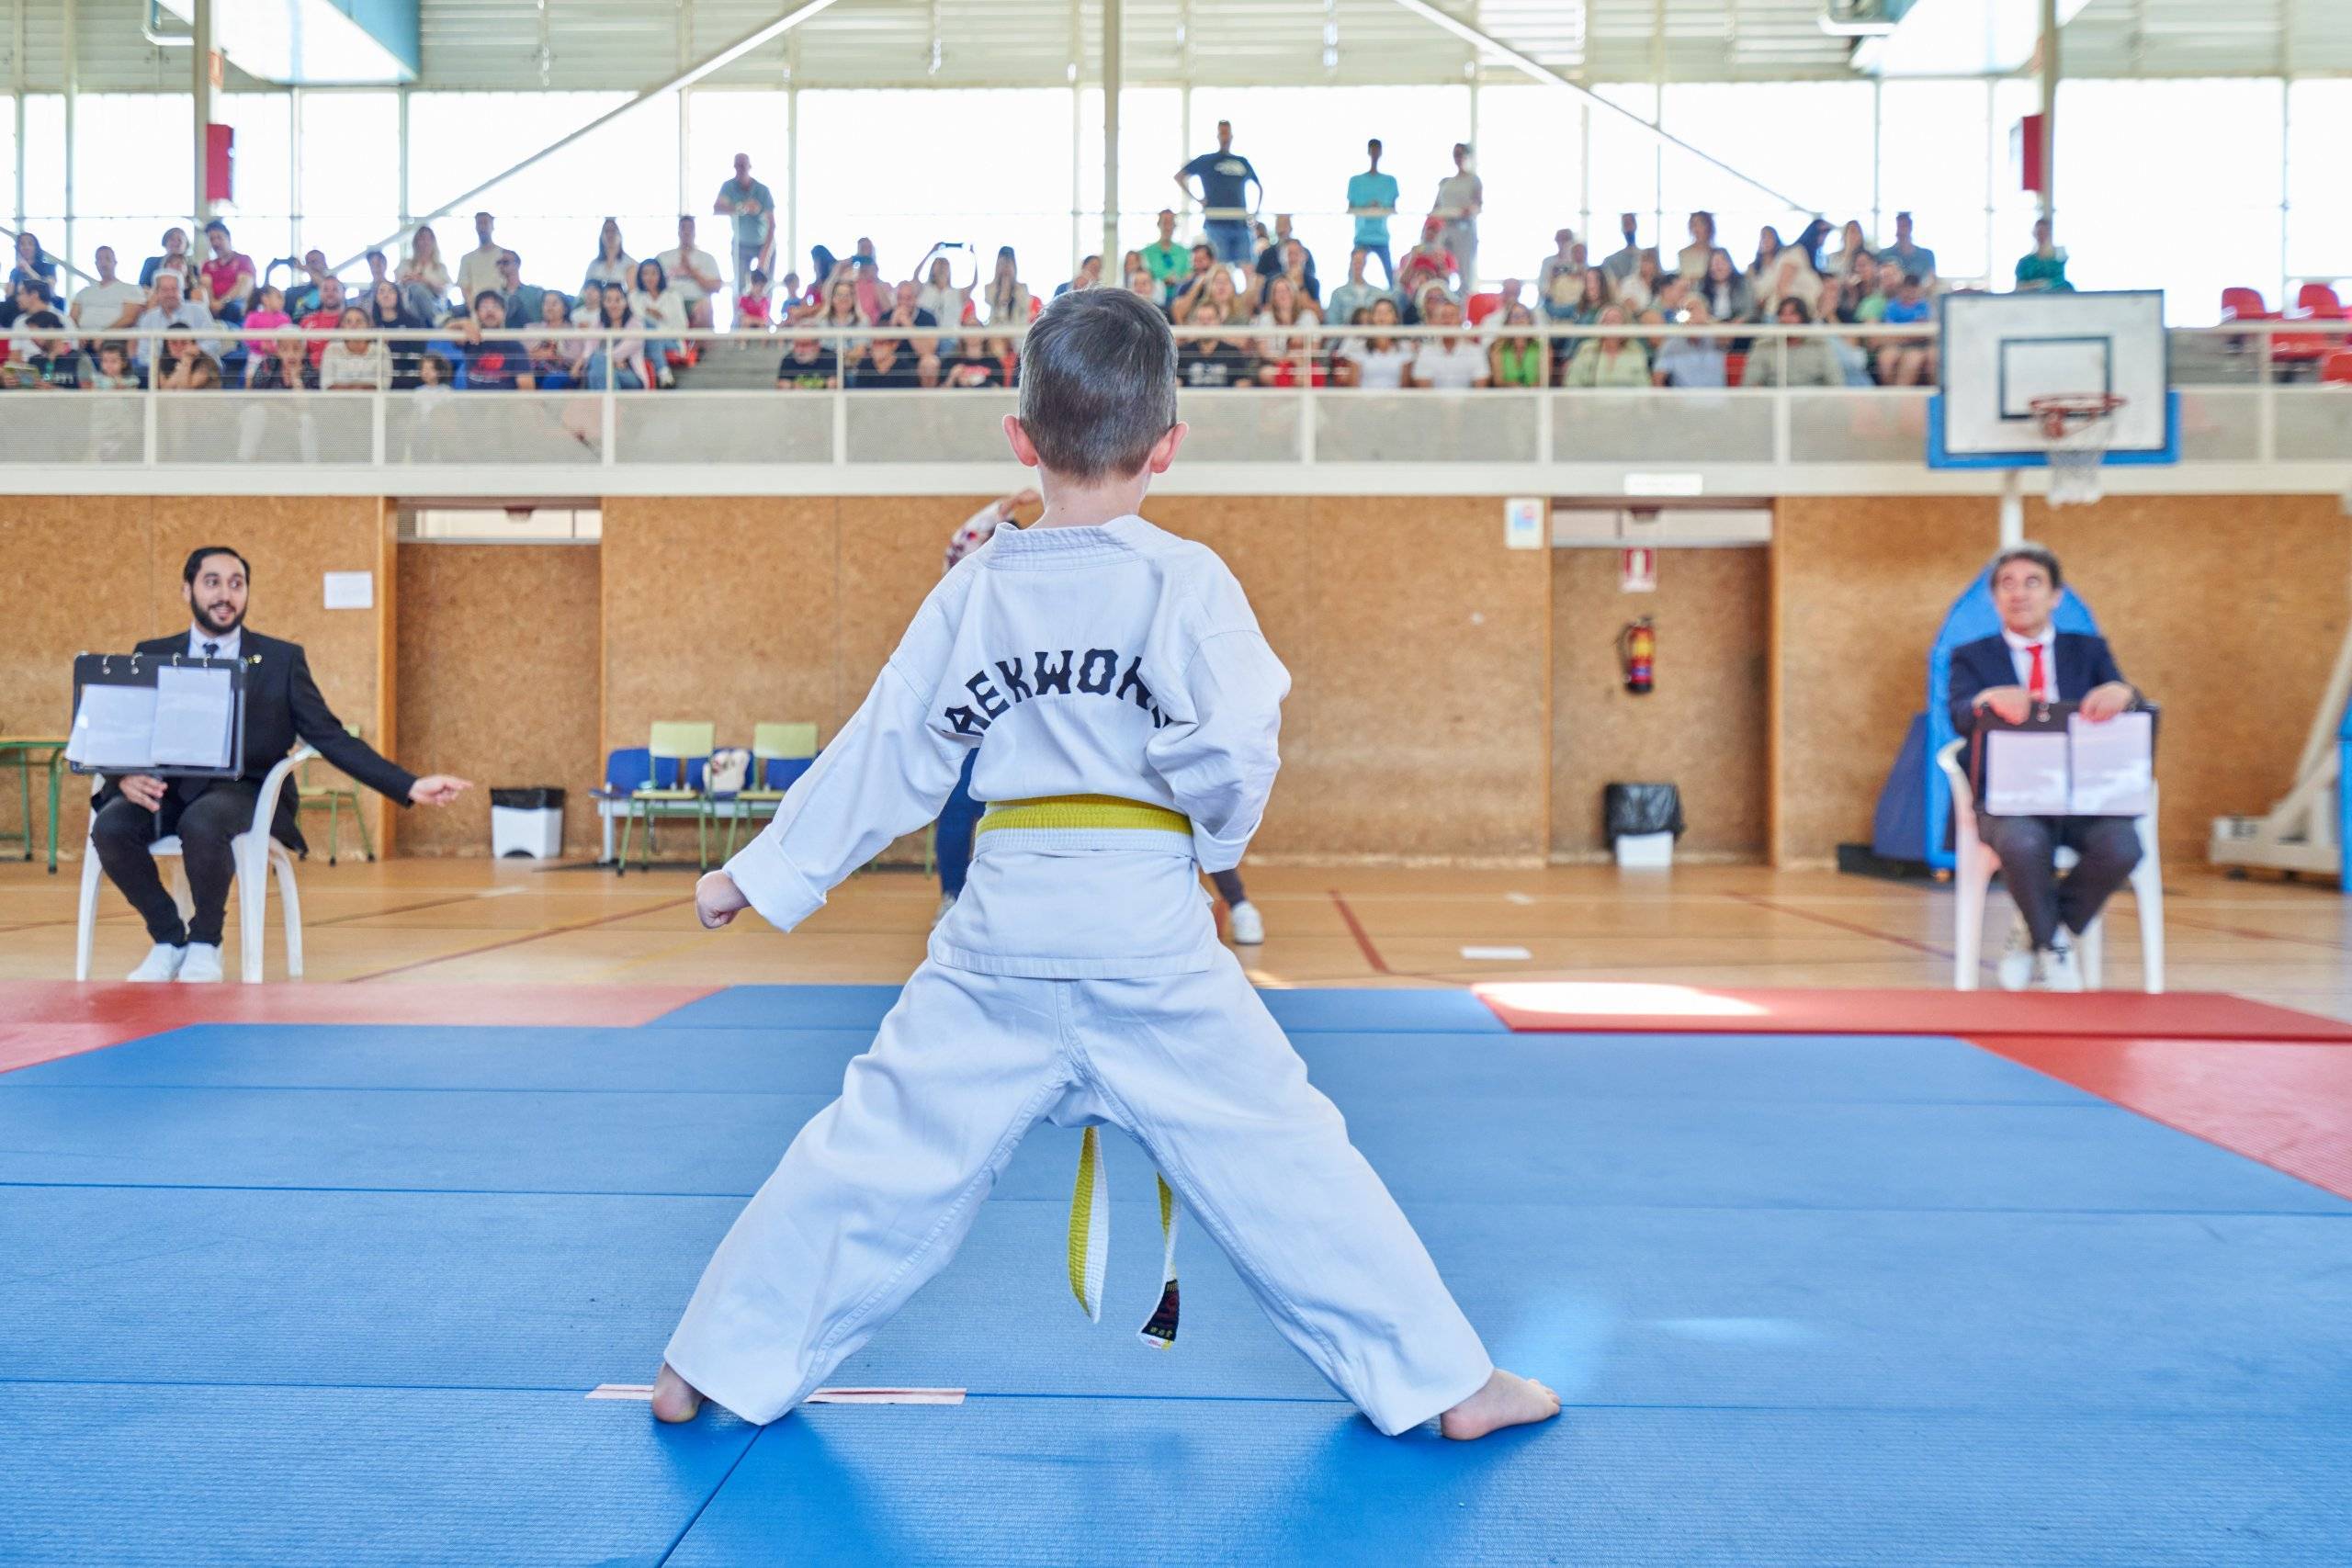 Niño participante en el Campeonato de Taekwondo durante la prueba.